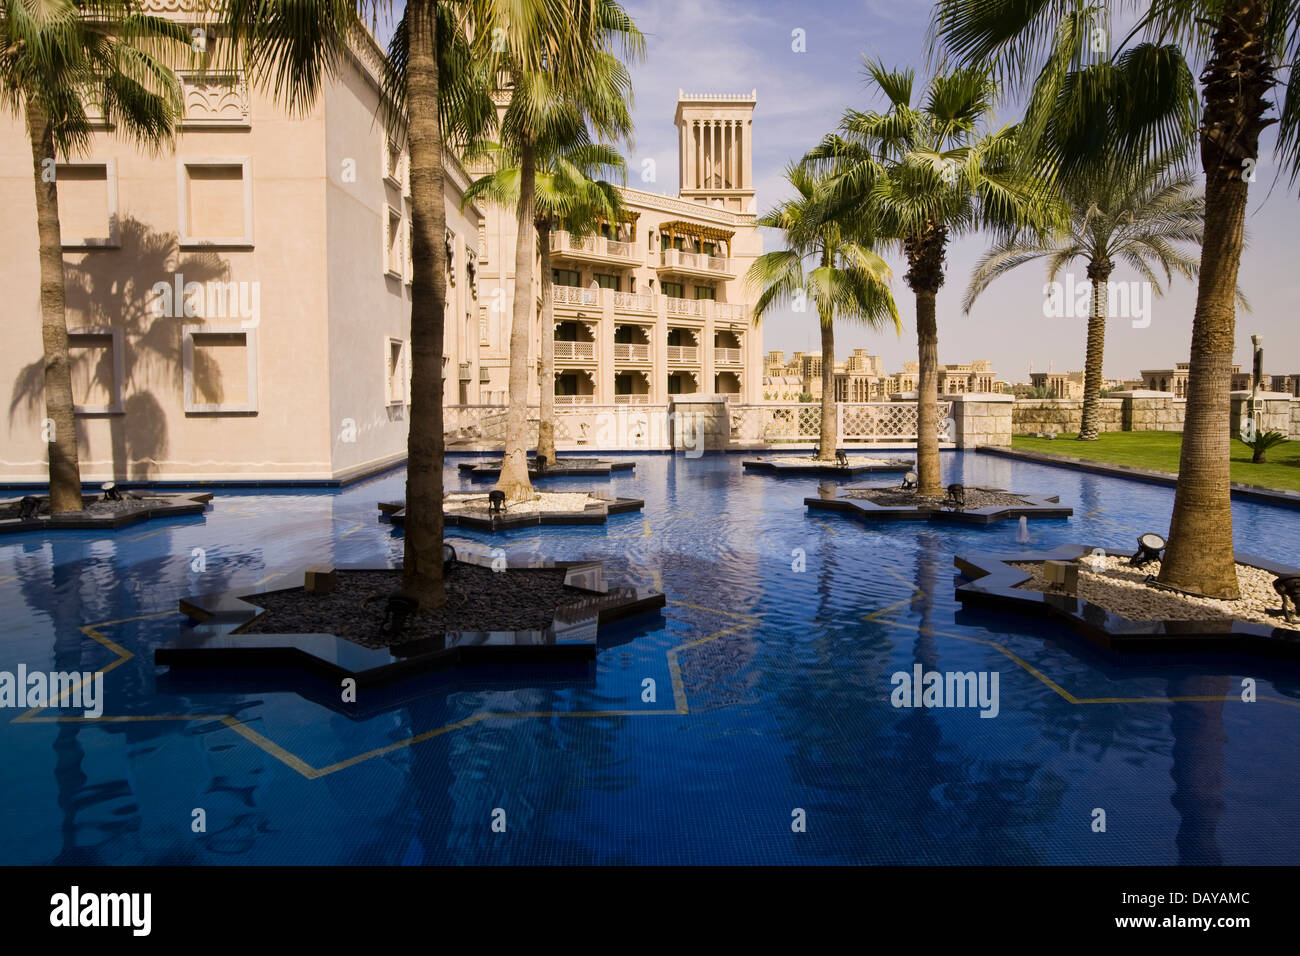 Al Qasr Hotel wurde entworfen, um reflektieren Sommerpalast des Emirs, Dubai, Vereinigte Arabische Emirate Stockfoto